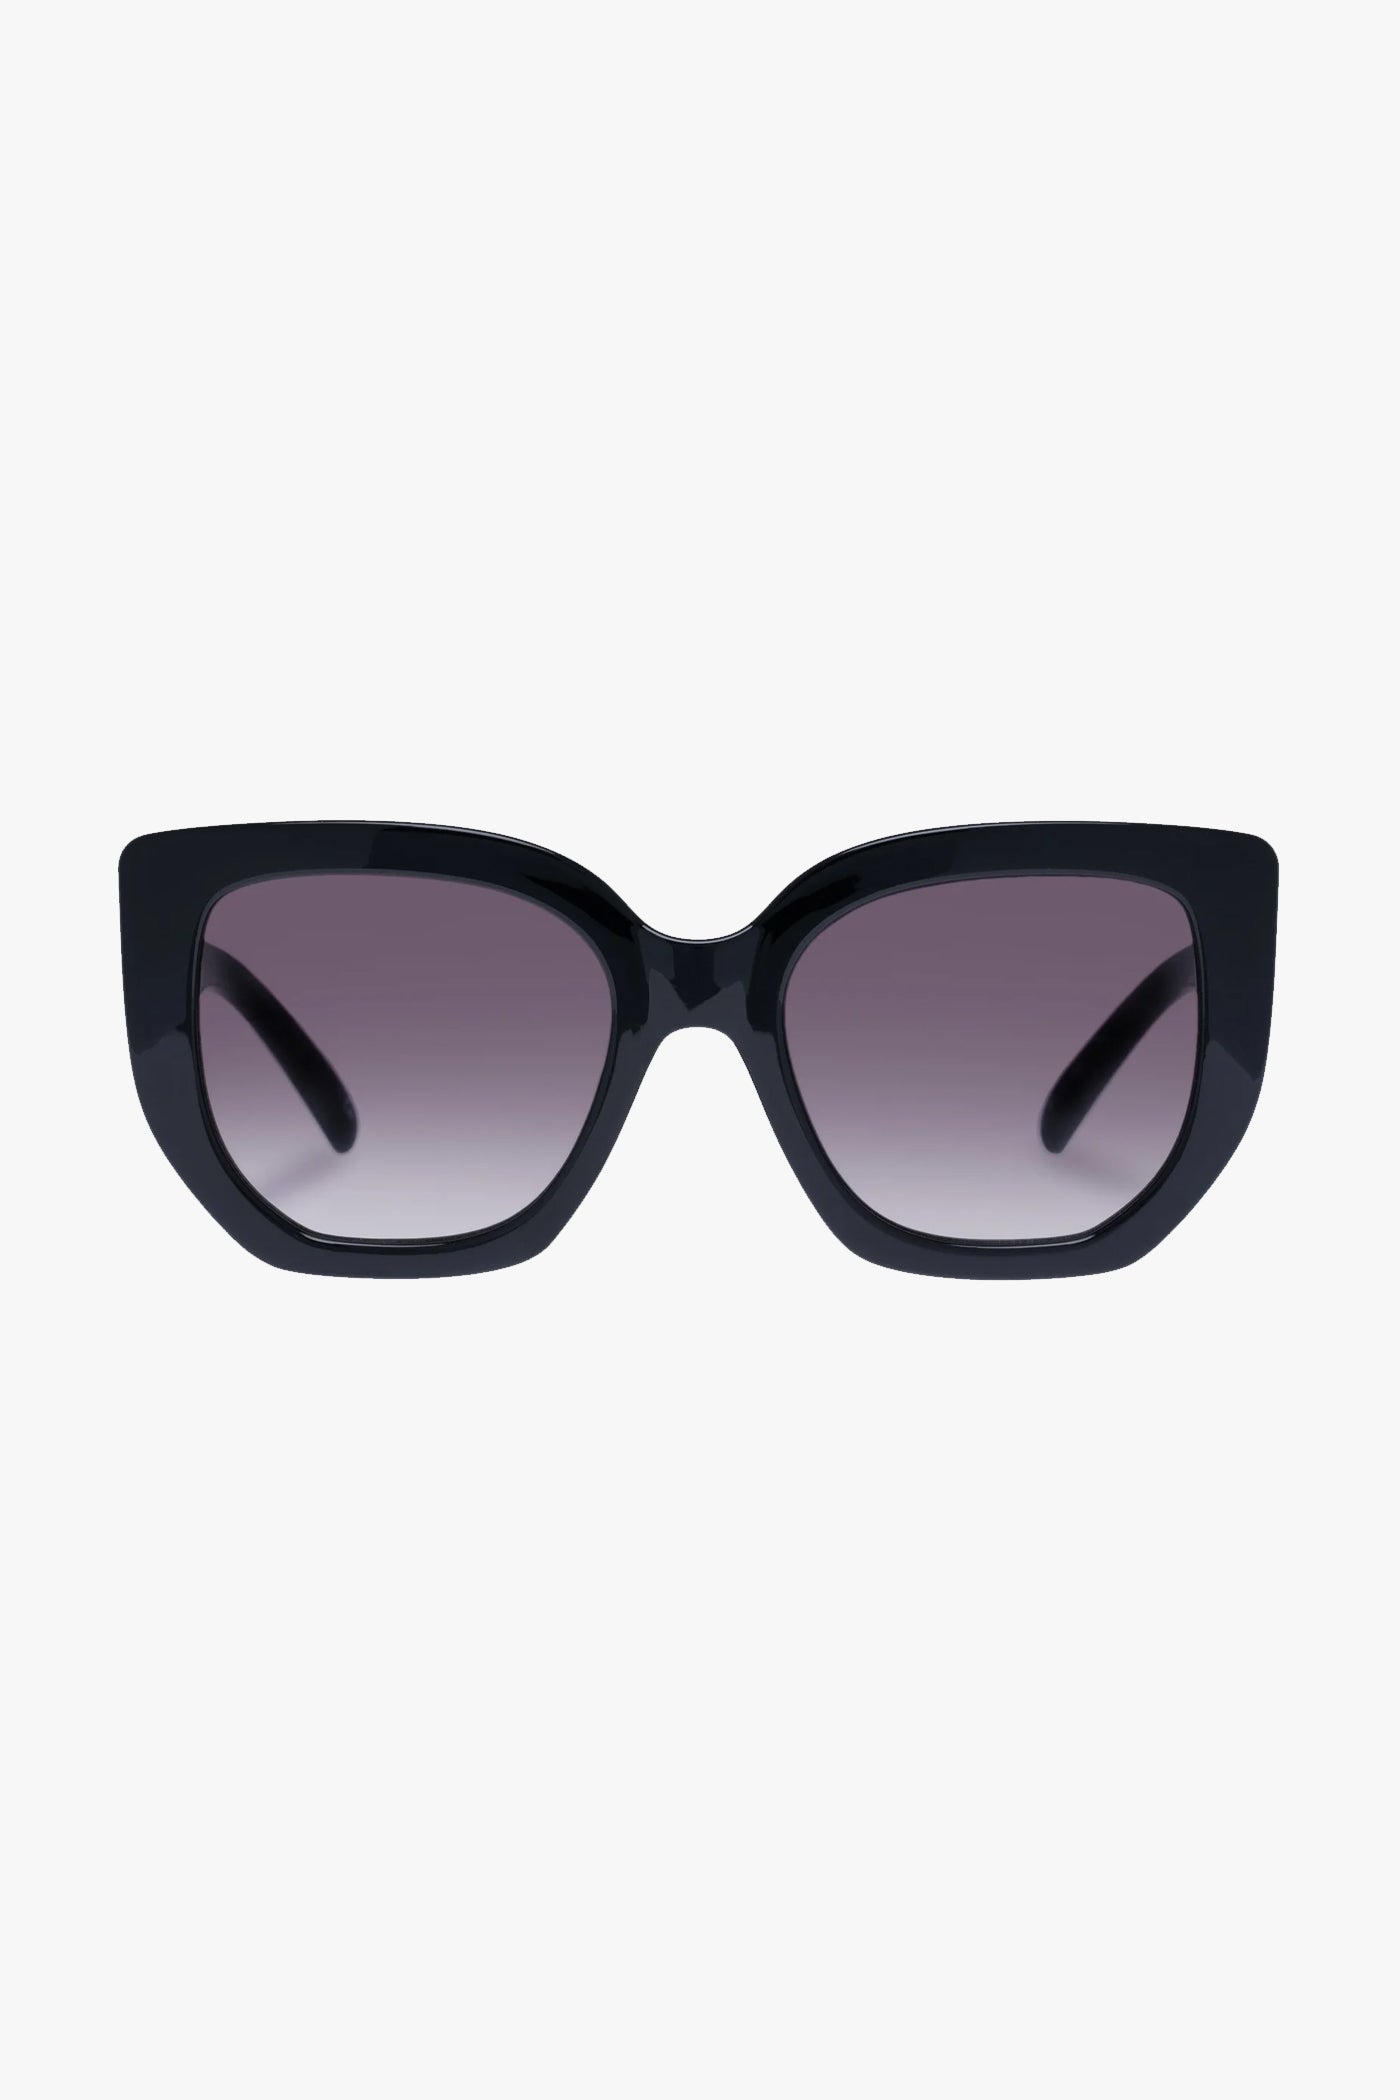 Le Specs Euphoria Sunglasses